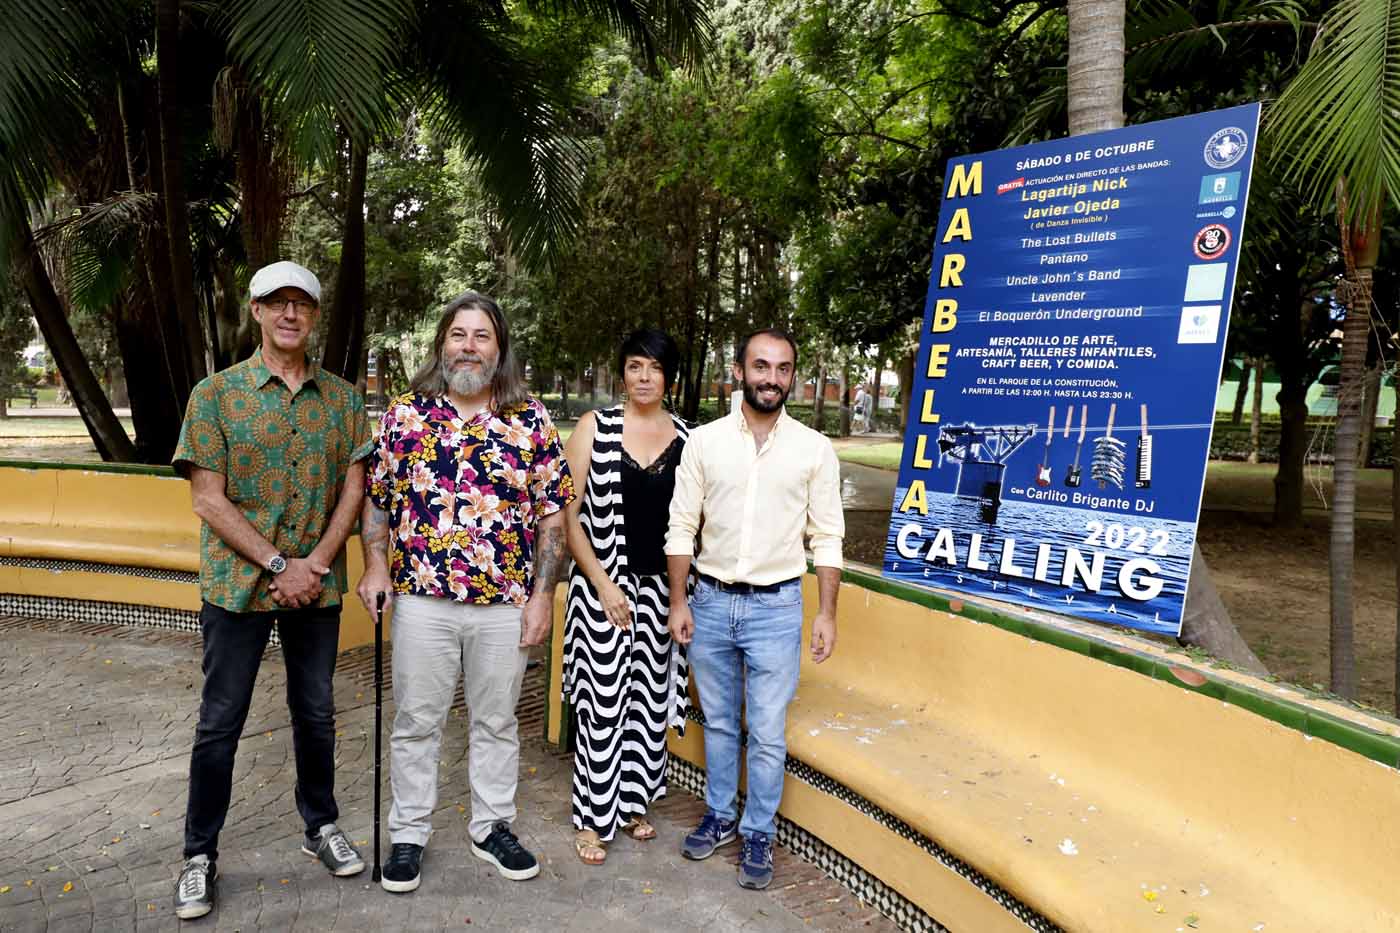 El Parque de la Constitución albergará el sábado 8 de octubre el ‘Marbella Calling Festival 2022’ con la actuación de cinco bandas y Lagartija Nick y Javier Ojeda como cabezas de cartel